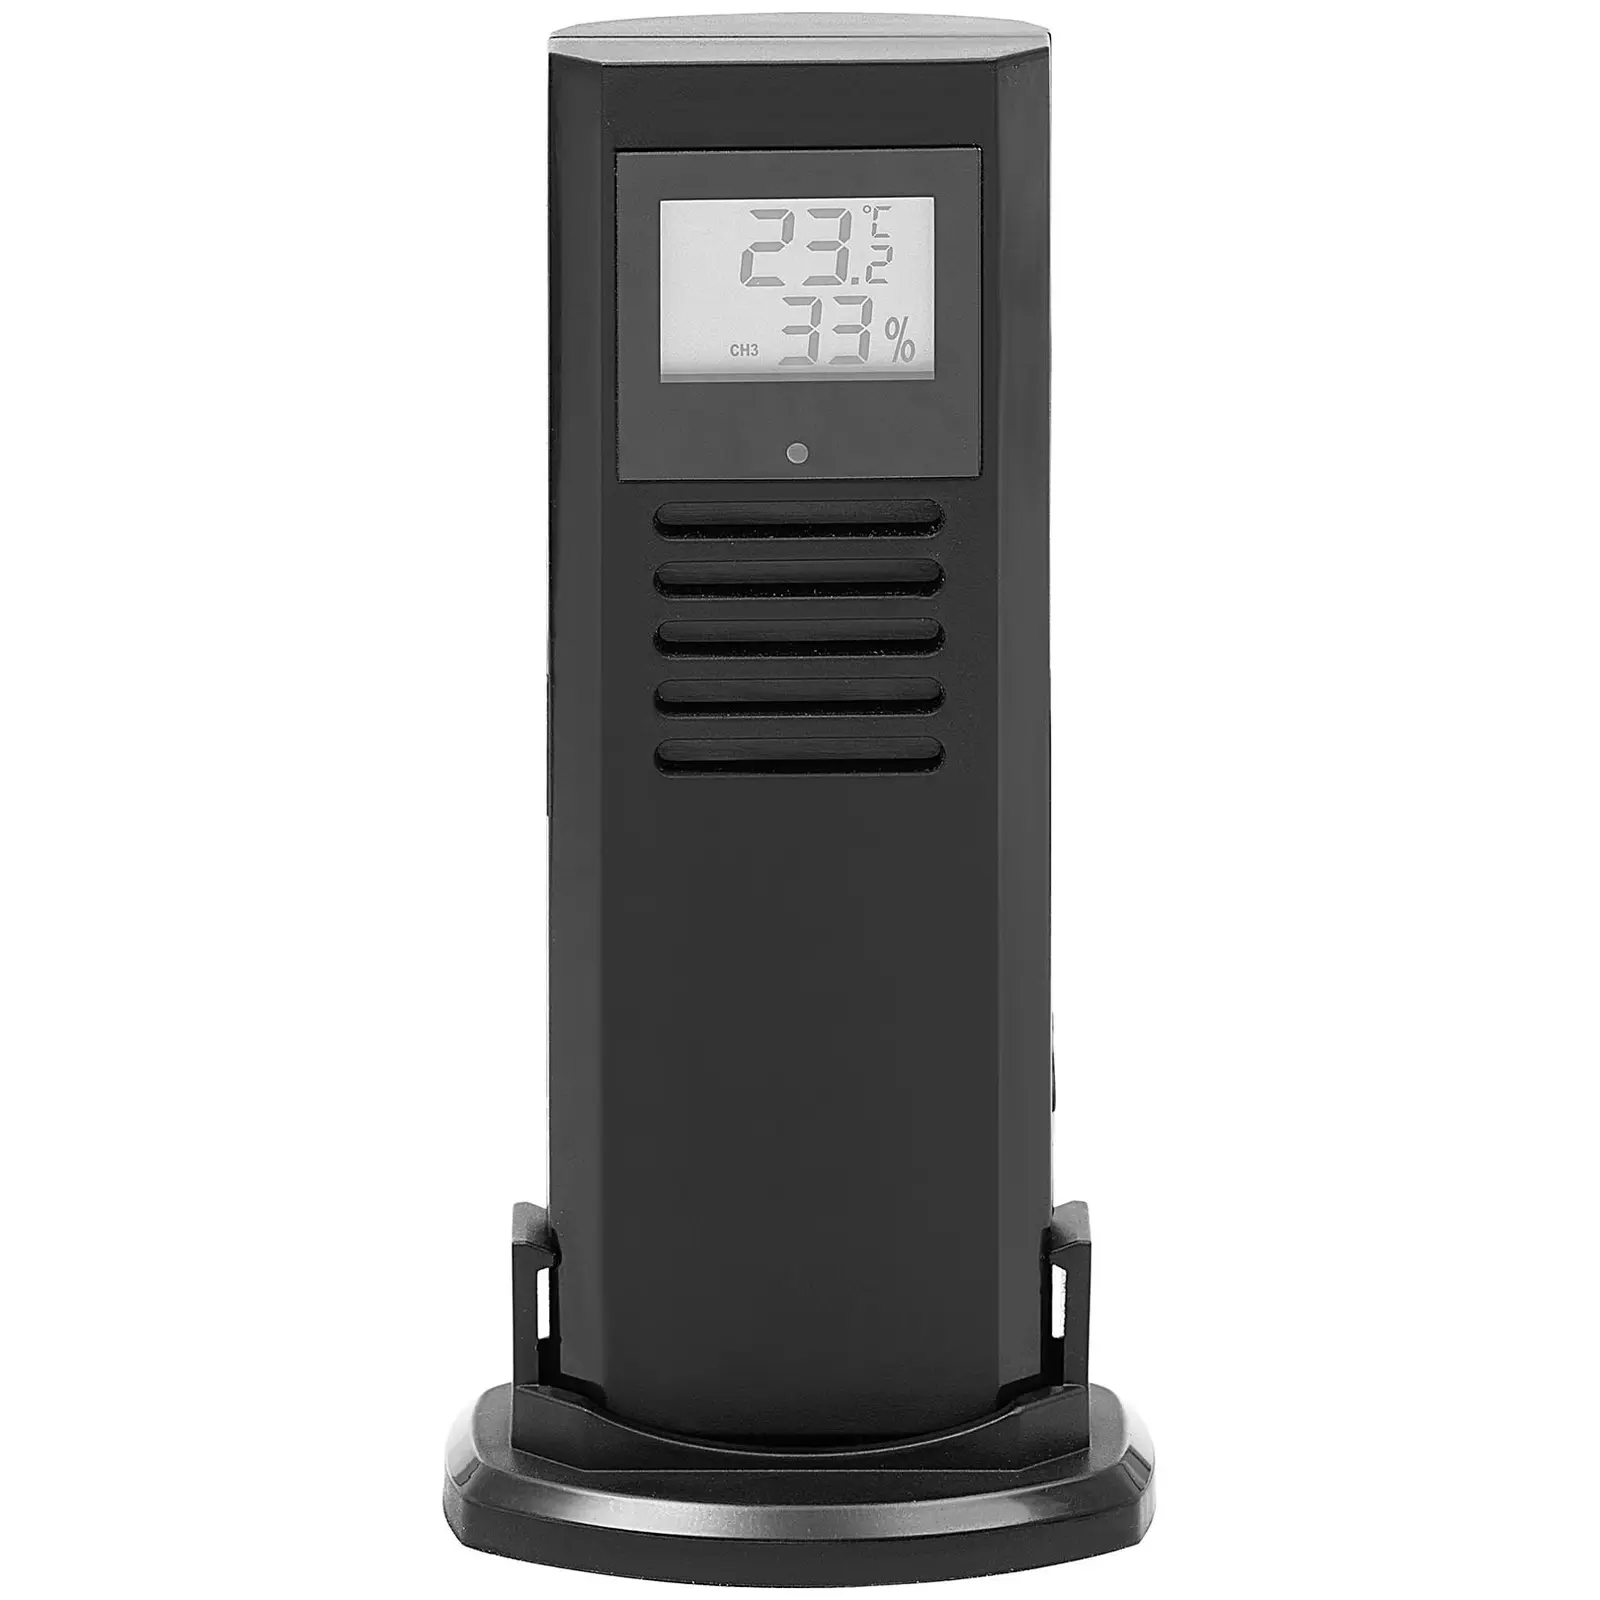 Väderstation - Trådlös - LCD - 3 sensorer